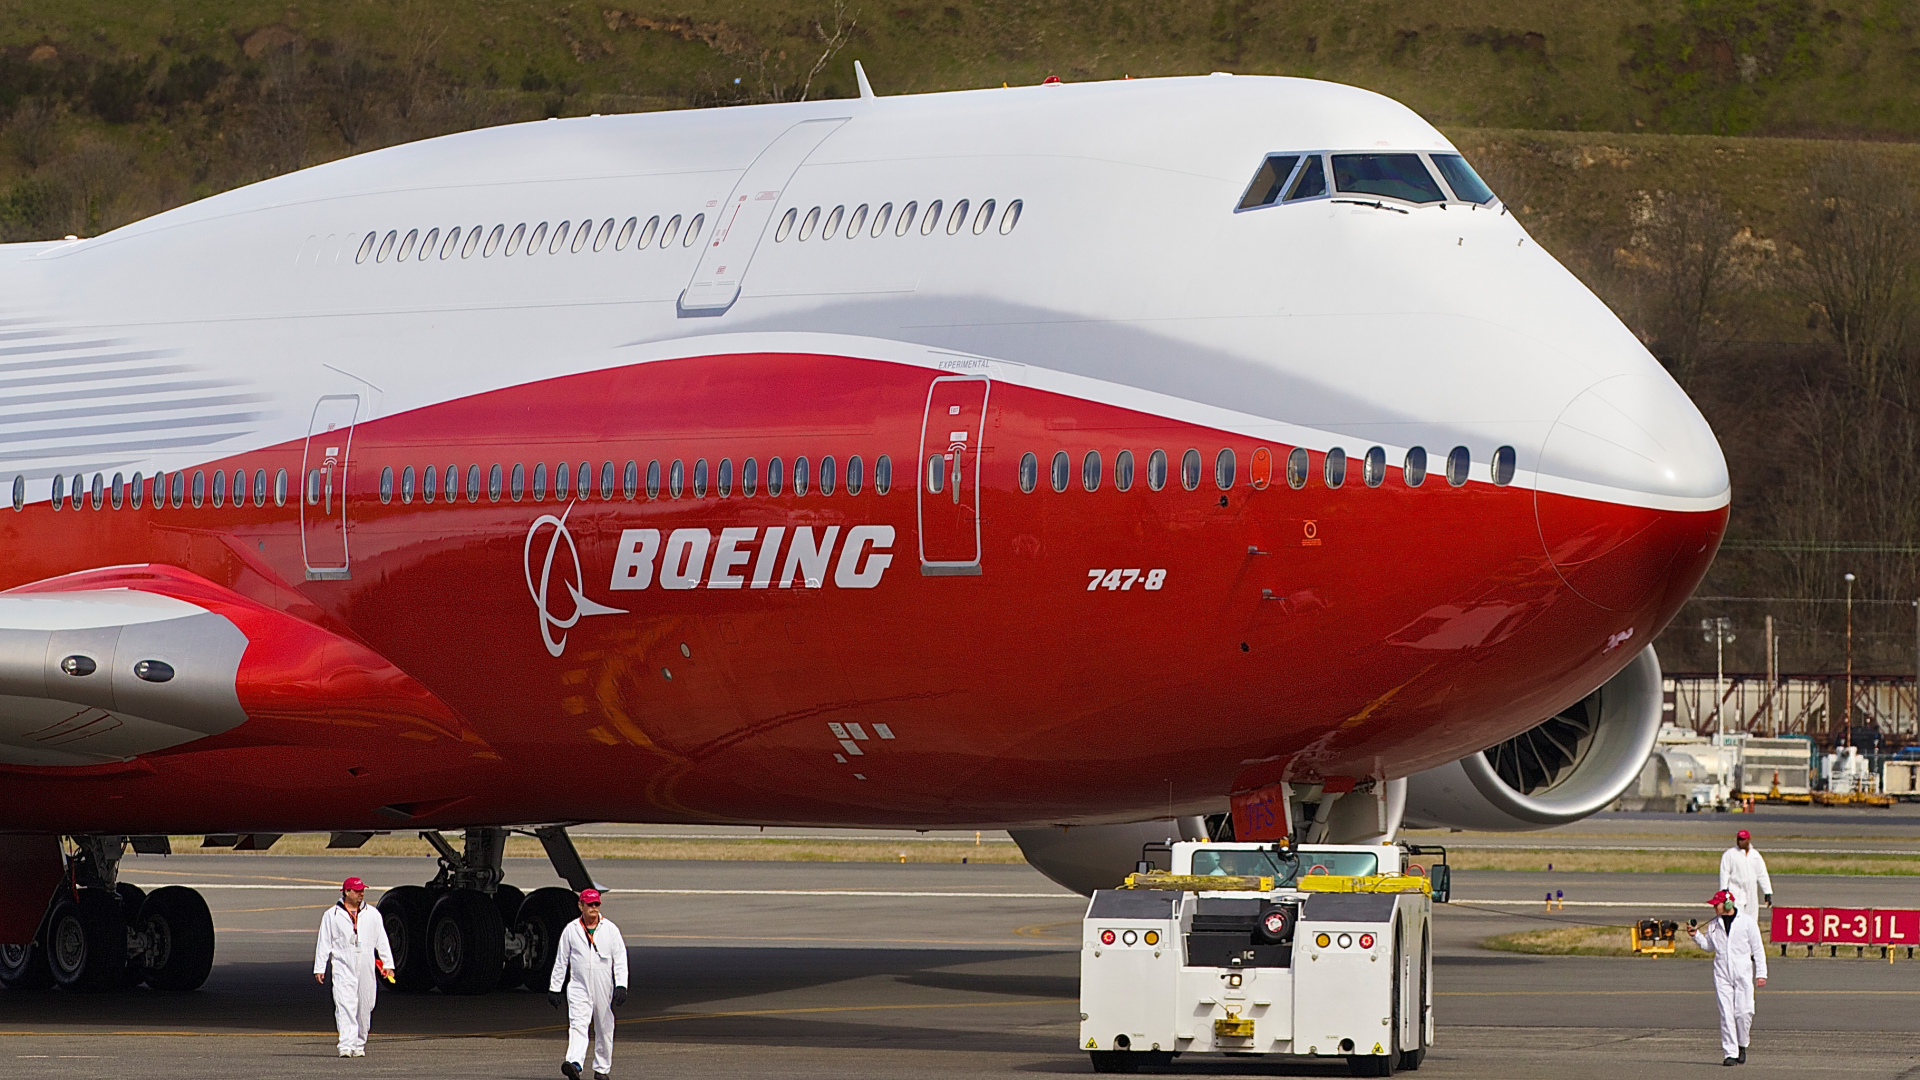 Boeing, Intercontinental, 747-8